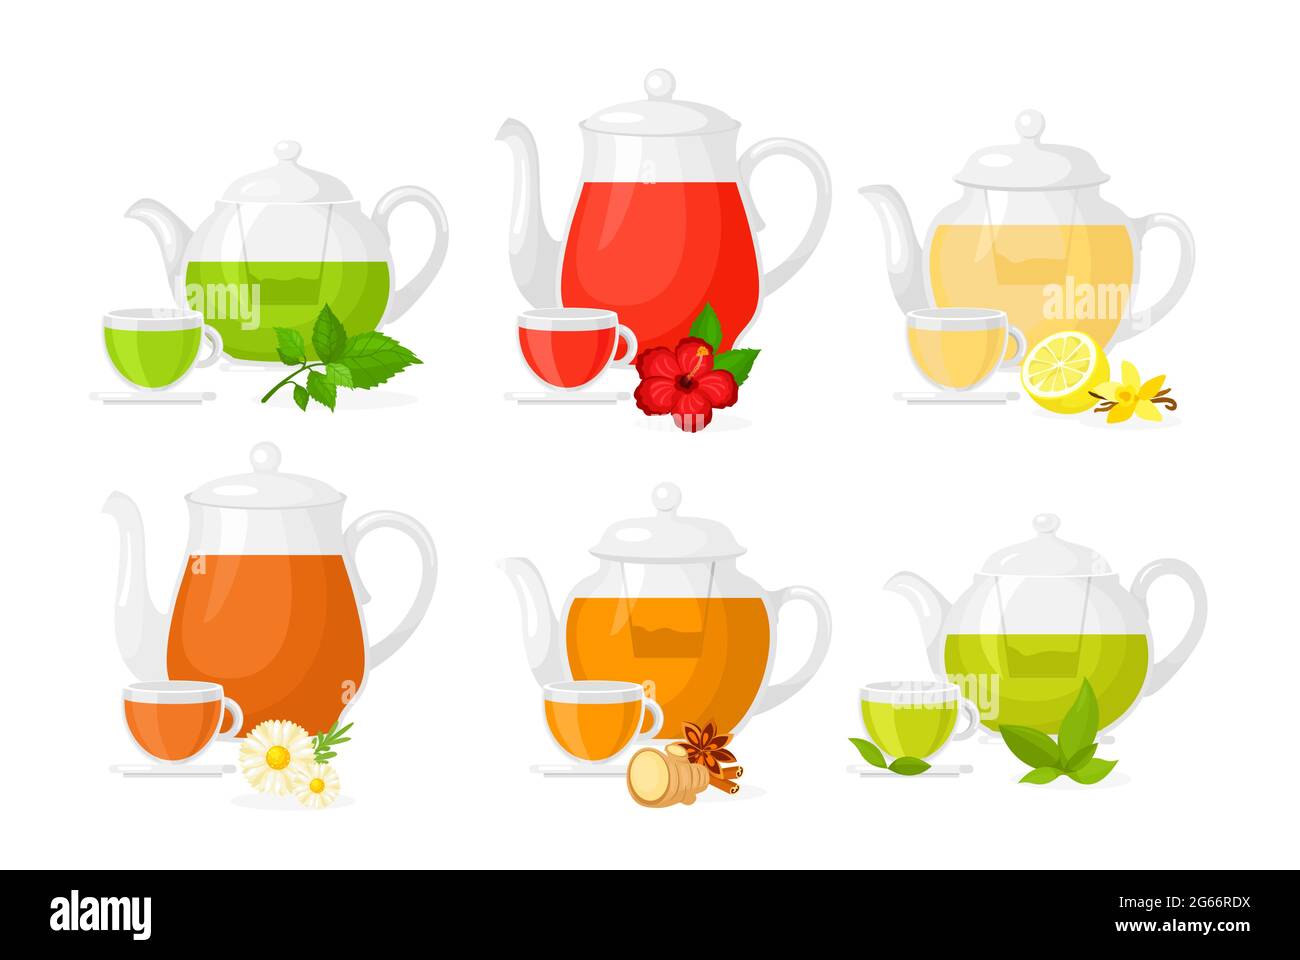 Vektor-Illustration Satz von verschiedenen Arten von Tee. Set von Töpfen und Tassen mit verschiedenen Zutaten Kräuter und Zitrone, Früchte und Ingwer isoliert auf Stock Vektor